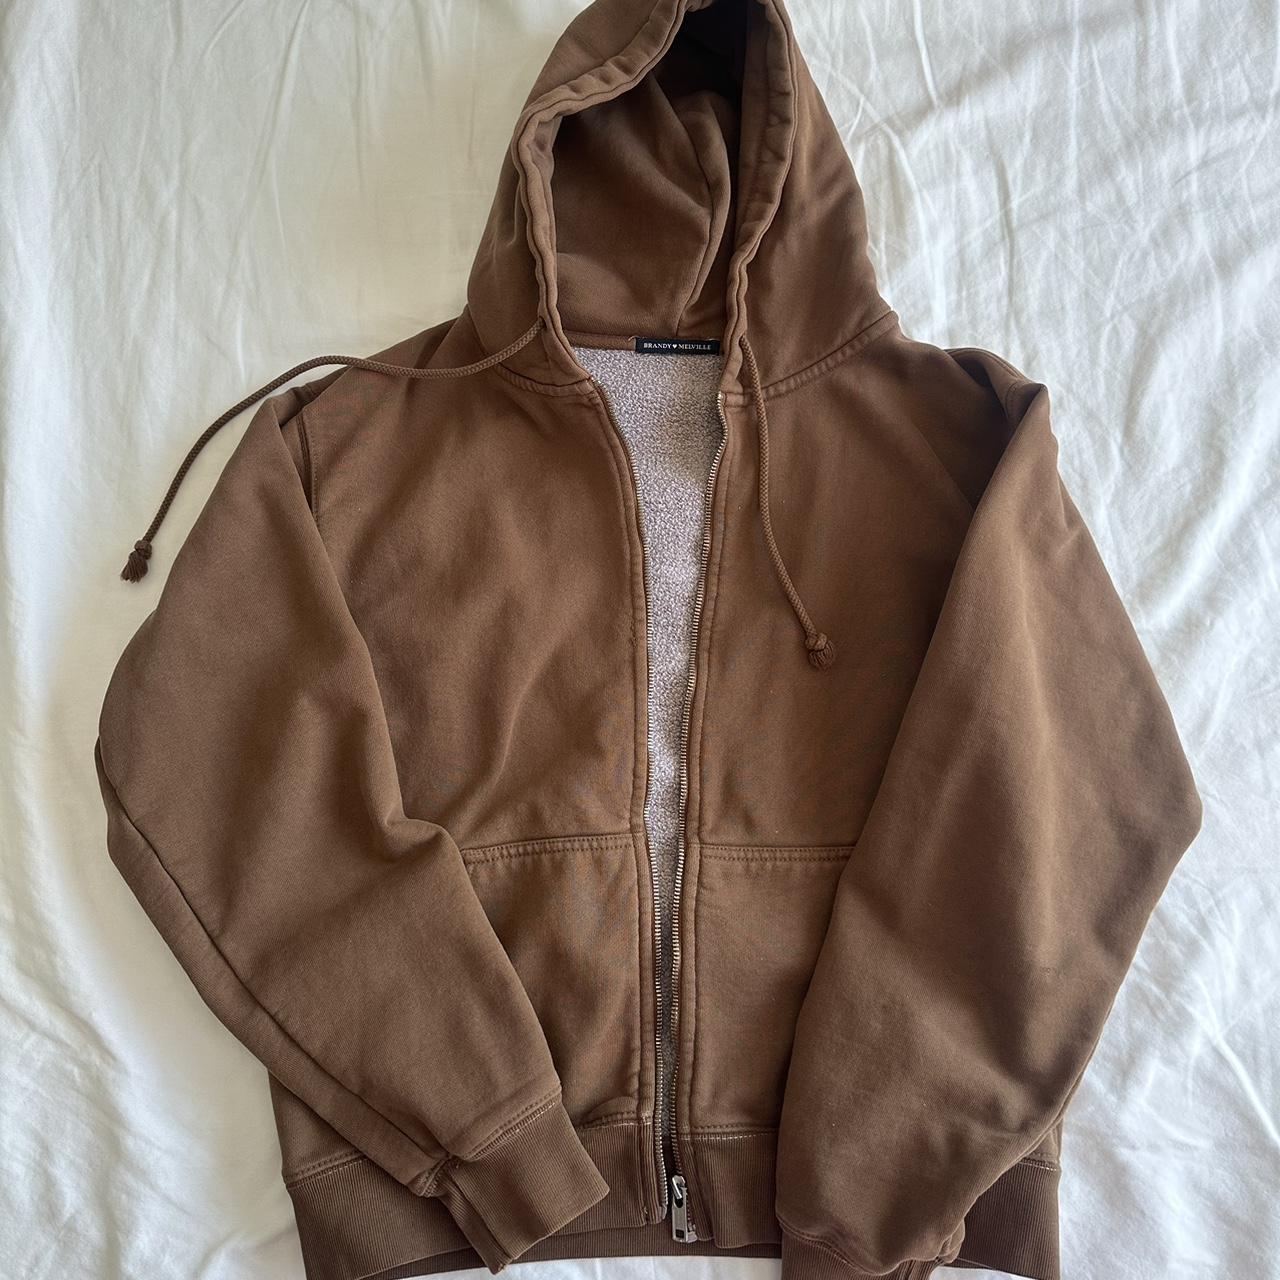 Brandy Melville Christy hoodie in brown, perfect - Depop